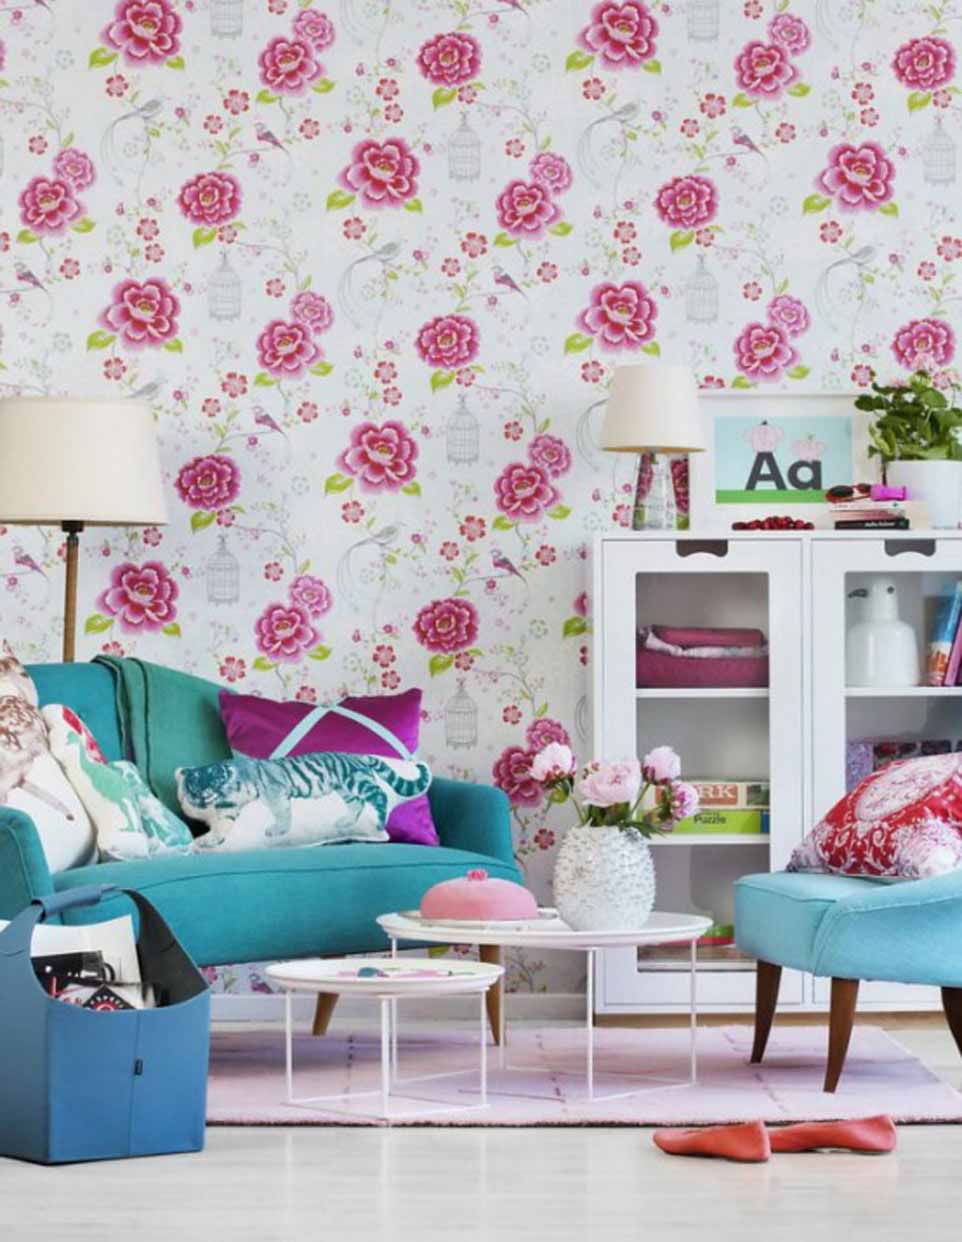 50 Contoh Wallpaper Dinding Ruang Tamu Minimalis Desainrumahnyacom